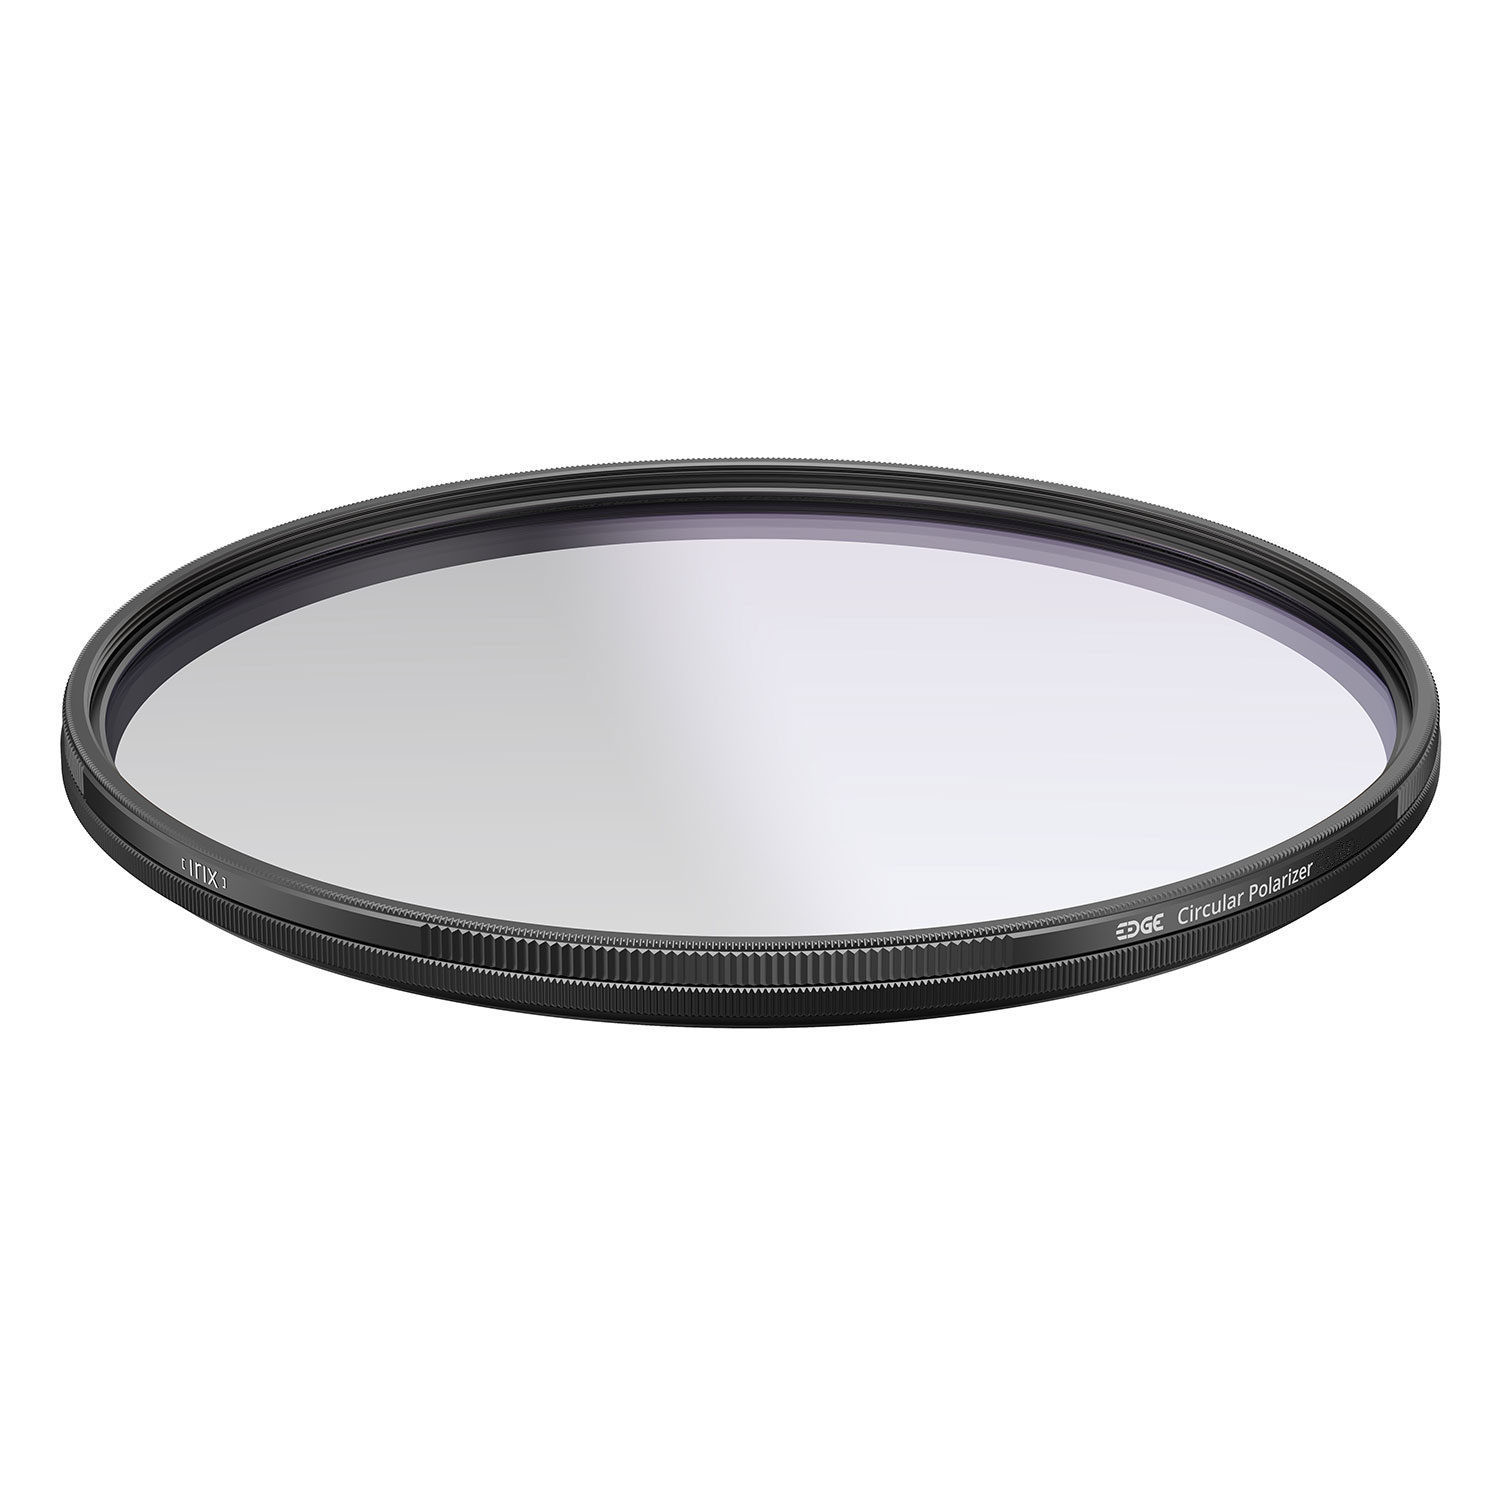 Irix Edge Circular Polarizer Filter 67mm